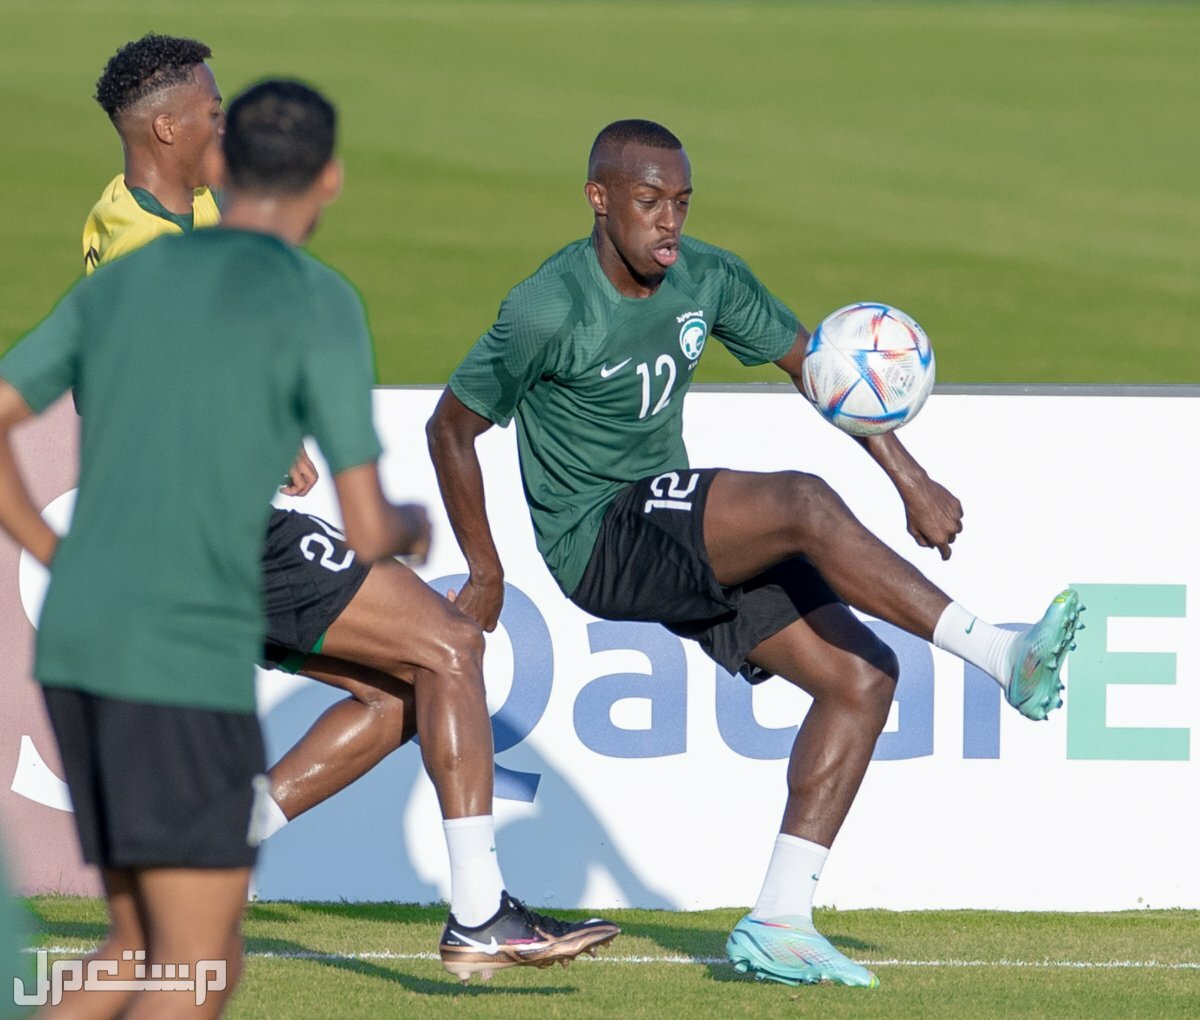 السعودية وبولندا مشاهدة مجانية لمباريات كاس العالم 2022 في اليَمَن المنتخب السعودي